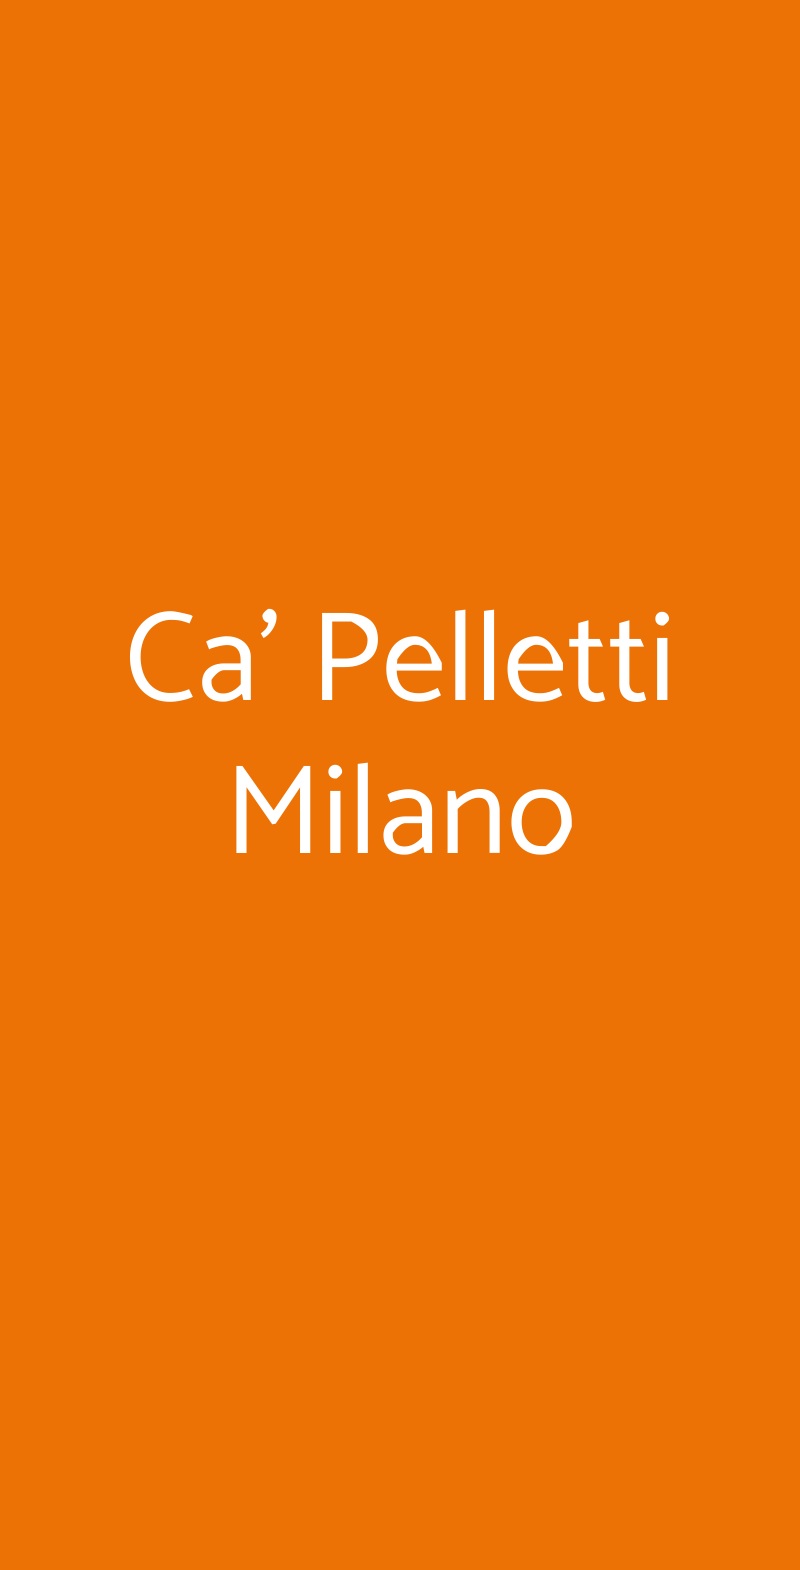 Ca' Pelletti Milano Milano menù 1 pagina